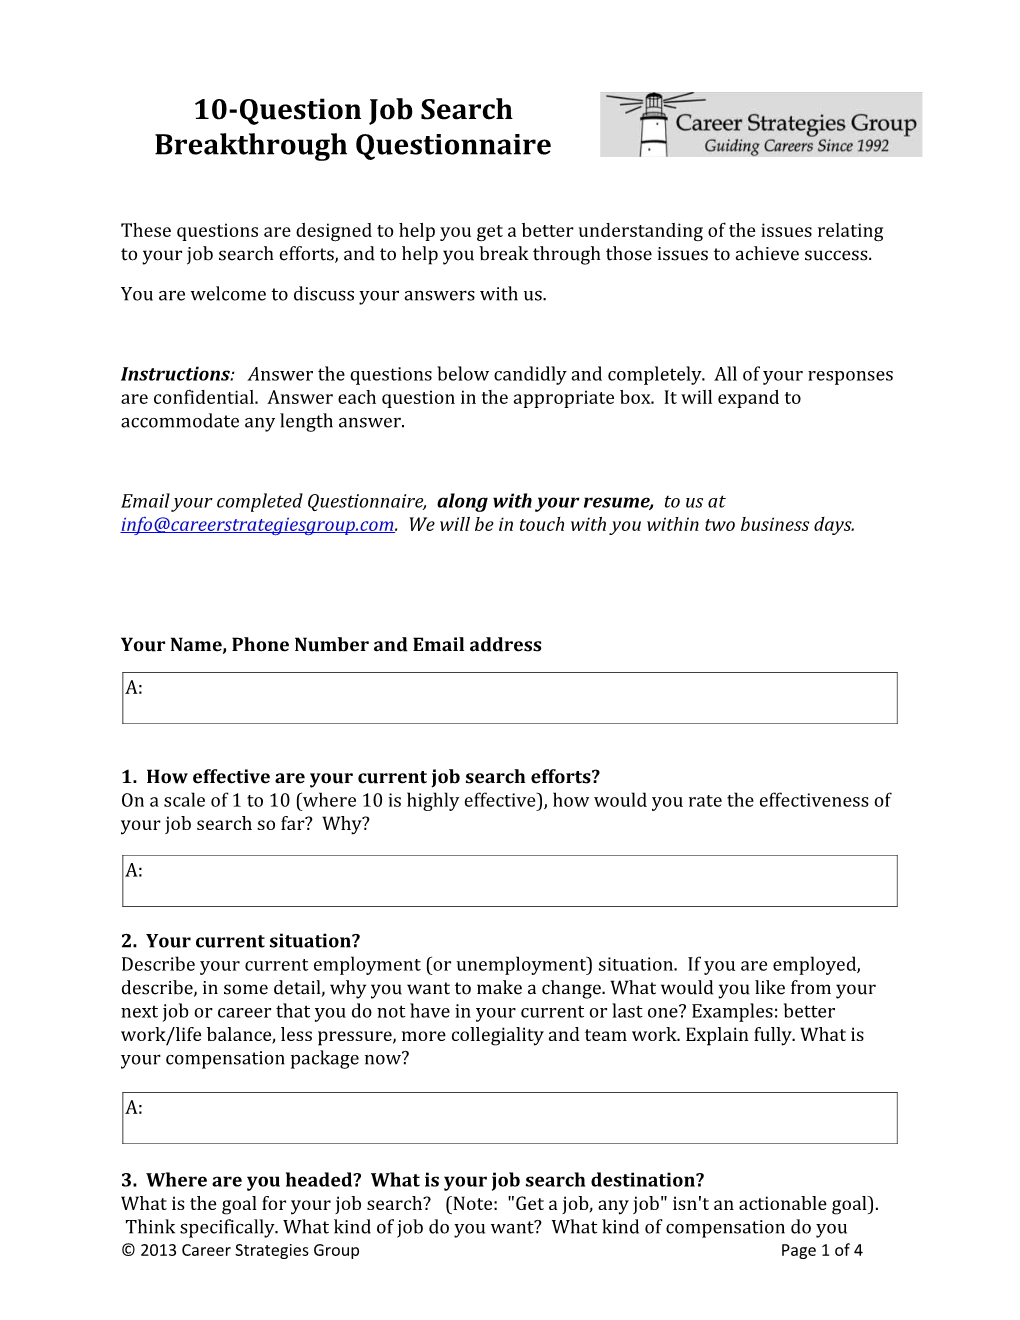 10-Question Job Search Breakthrough Questionnaire